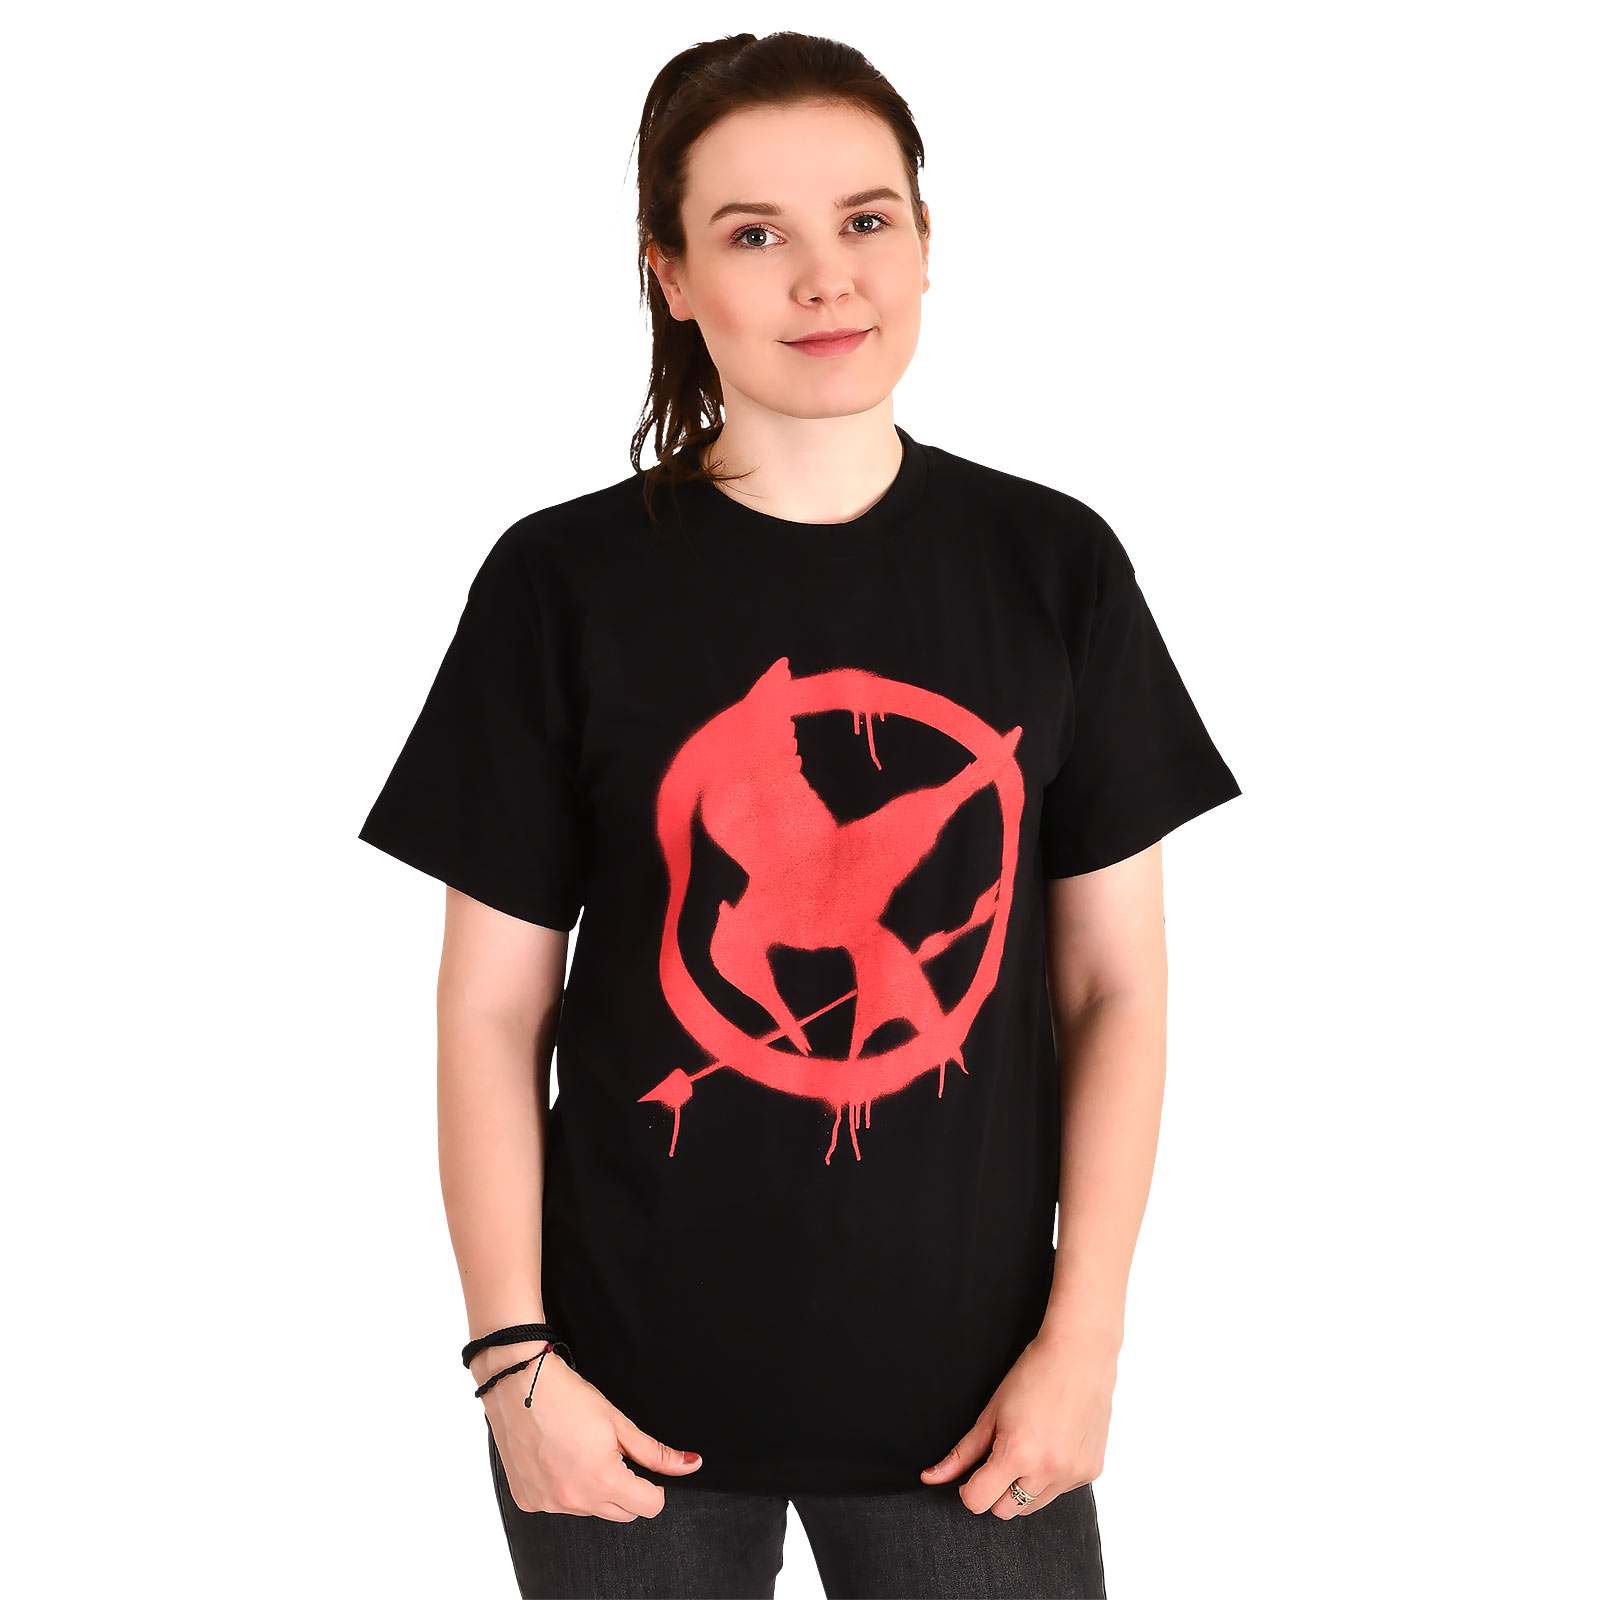 Hongerspelen - Spotgaai Symbool T-Shirt Zwart